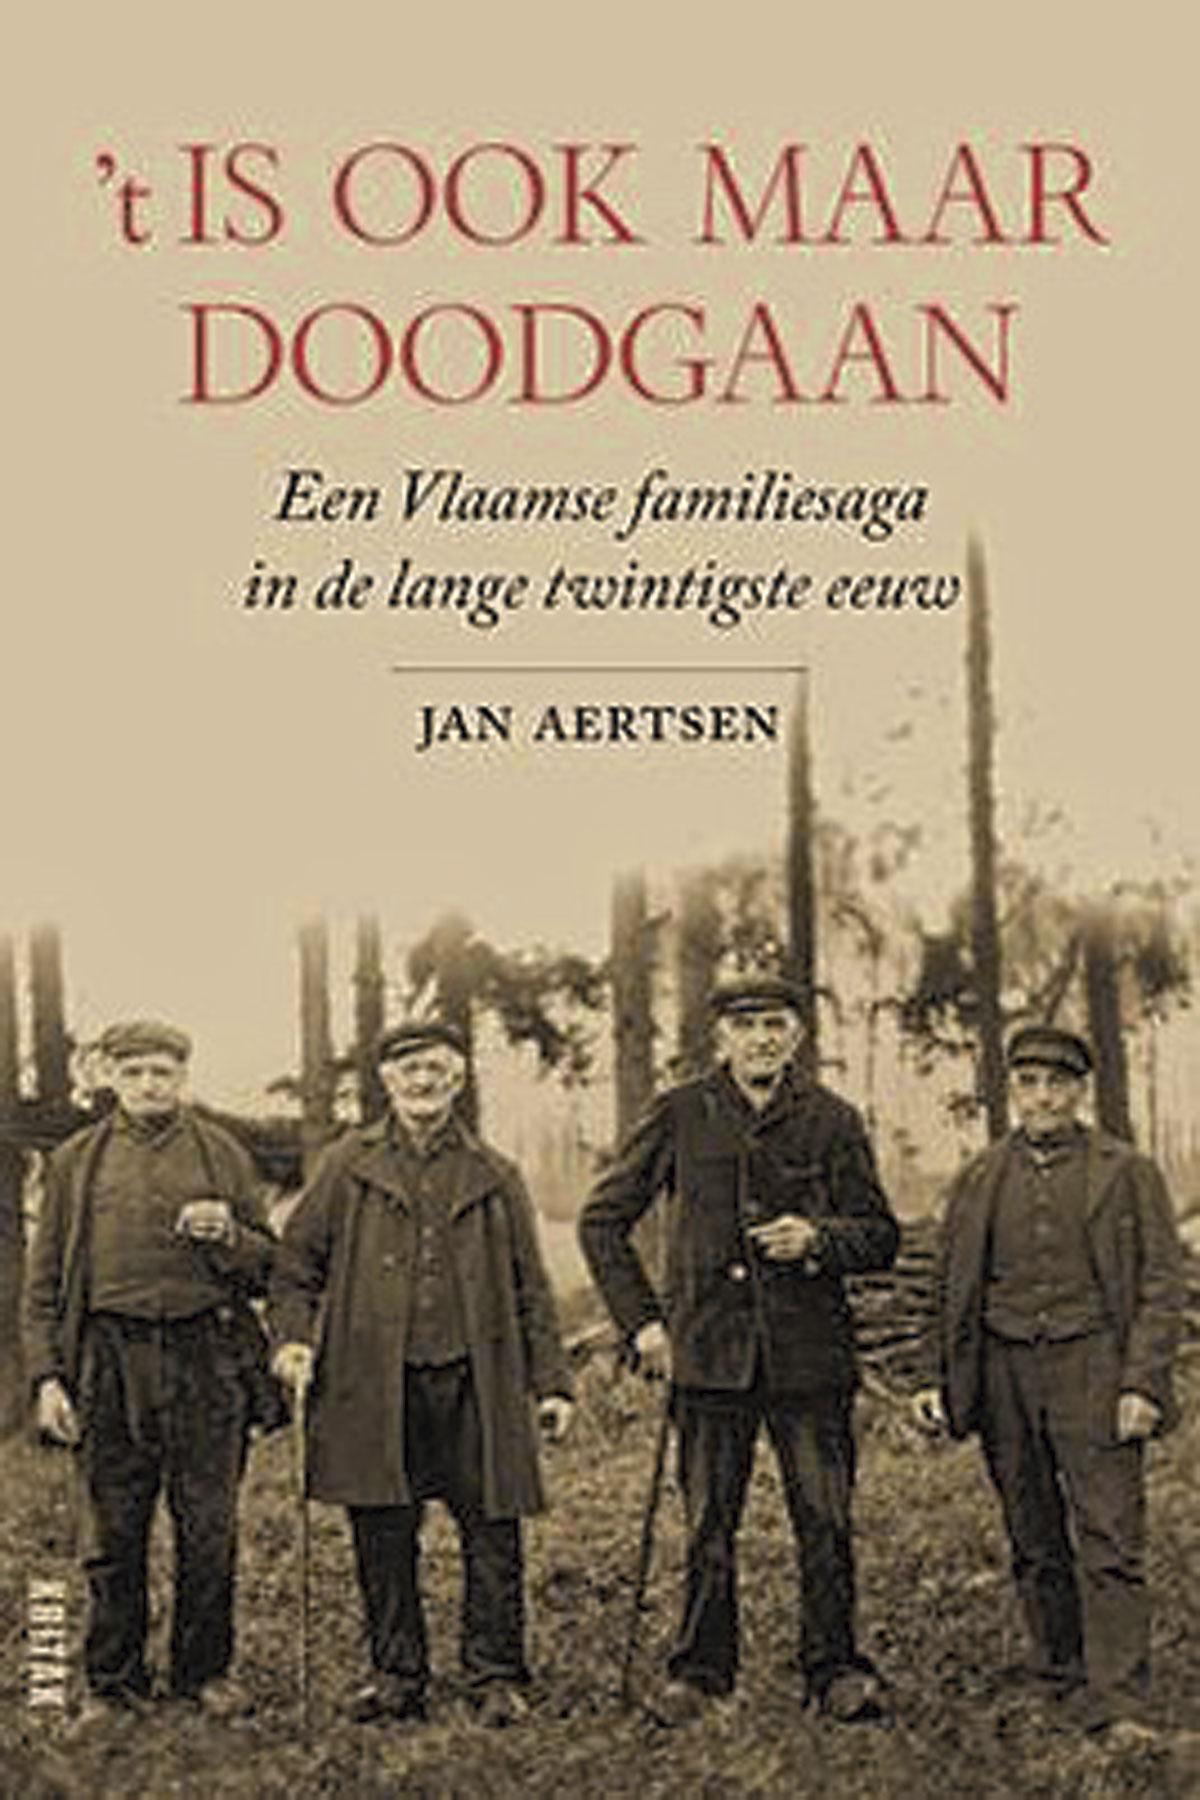 Jan Aertsen, ‘t Is ook maar doodgaan – Een Vlaamse familiesaga in de lange twintigste eeuw, Kritak/Lannoo, 256 blz., 23,99 euro.